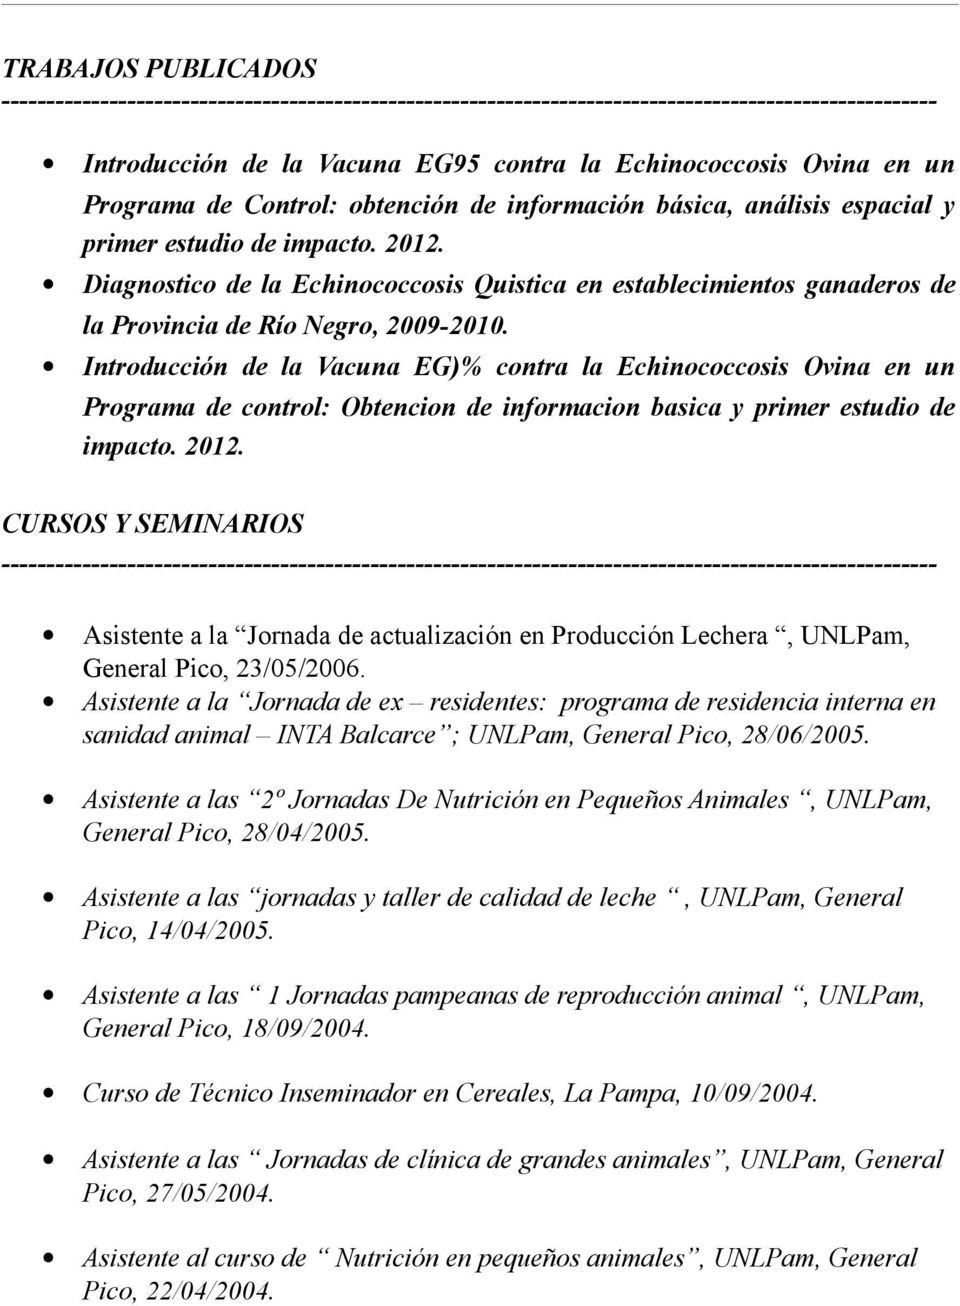 Introducción de la Vacuna EG)% contra la Echinococcosis Ovina en un Programa de control: Obtencion de informacion basica y primer estudio de impacto. 2012.